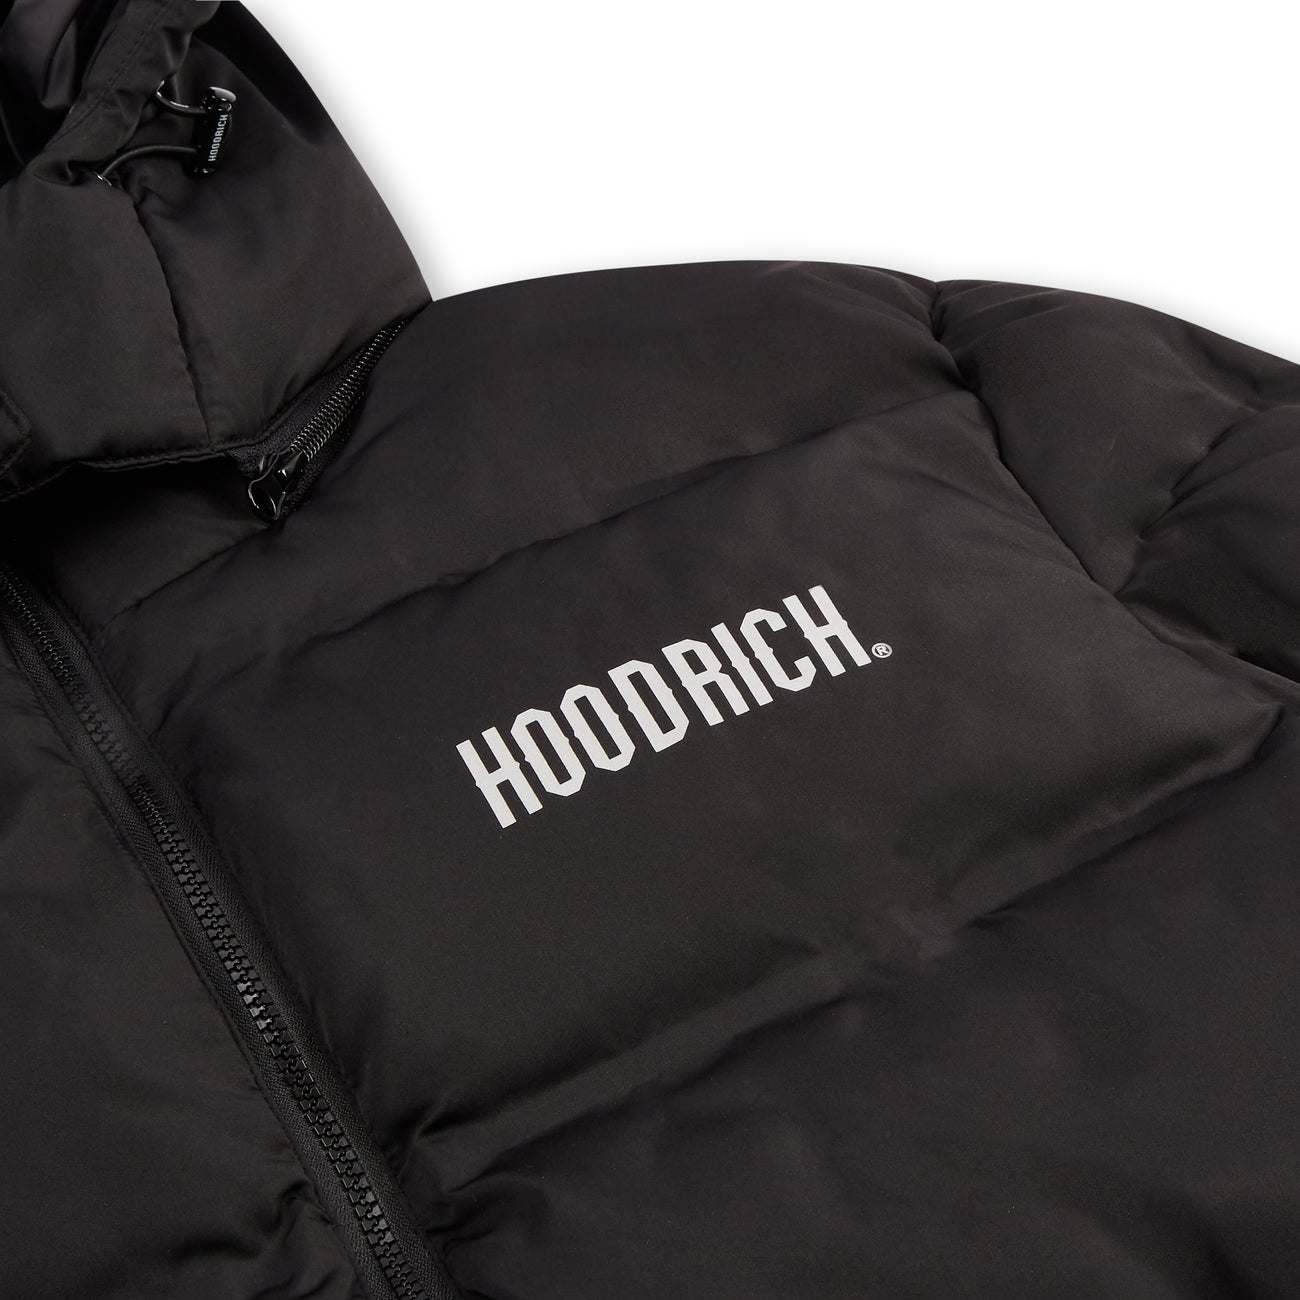 Hoodrich OG Stack Jacket Black – Vault Menswear